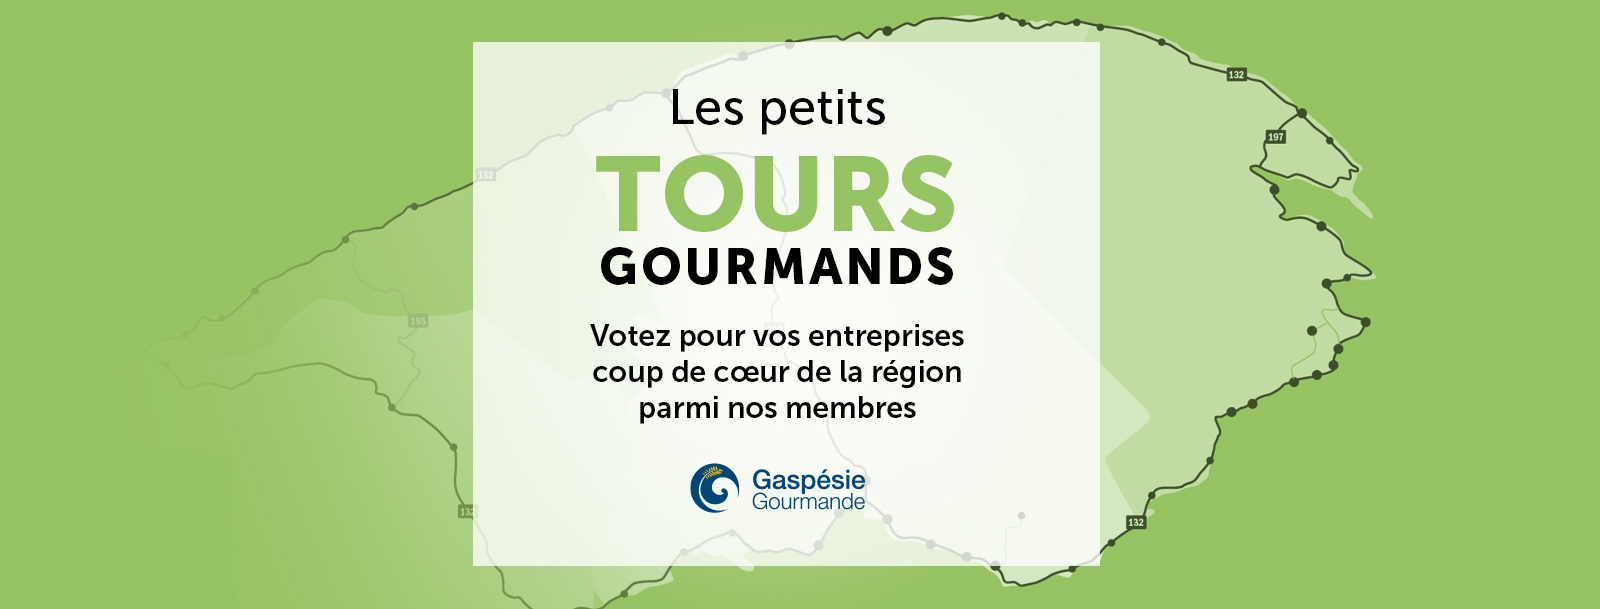 Création de petits Tours gourmands - Gaspésie Gourmande fait appel aux Gaspésiens et Gaspésiennes! 